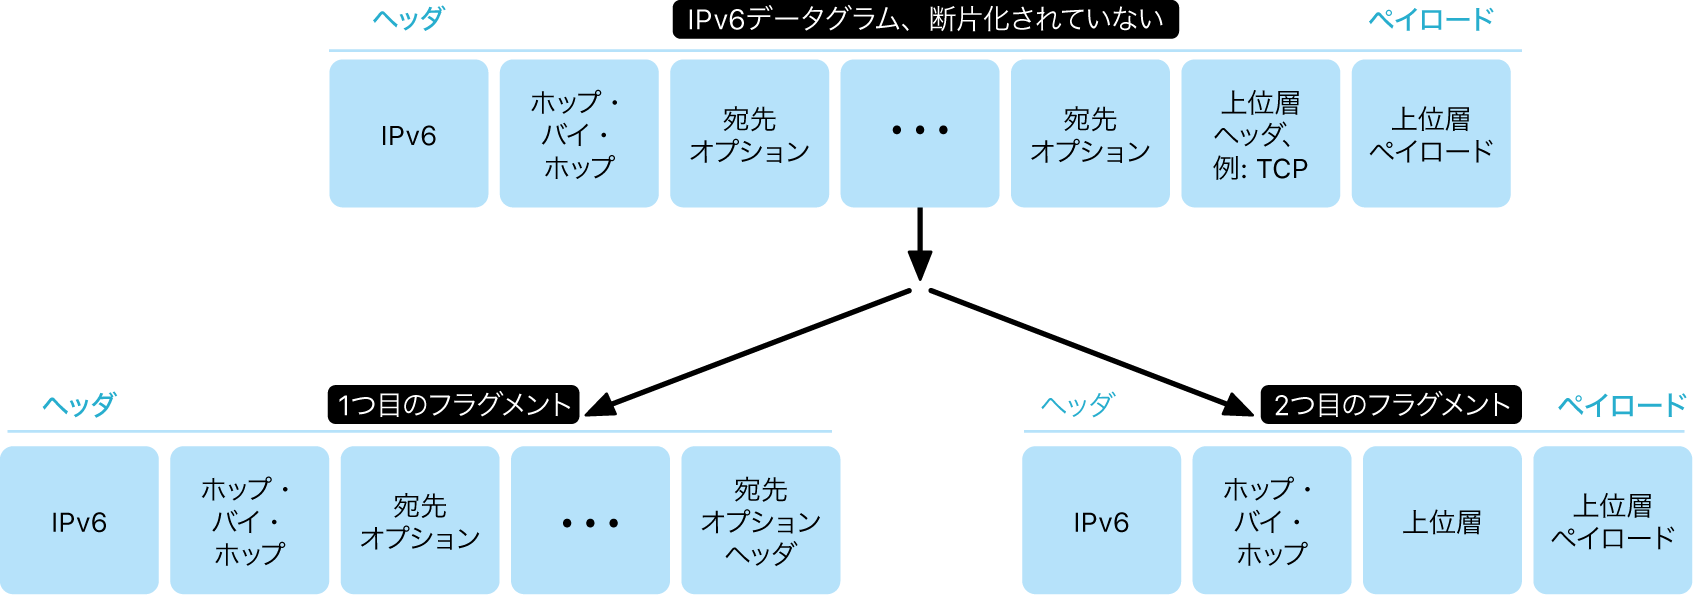 IPv6データグラムを、非断片化とその下の断片化の2つの層で示した図。